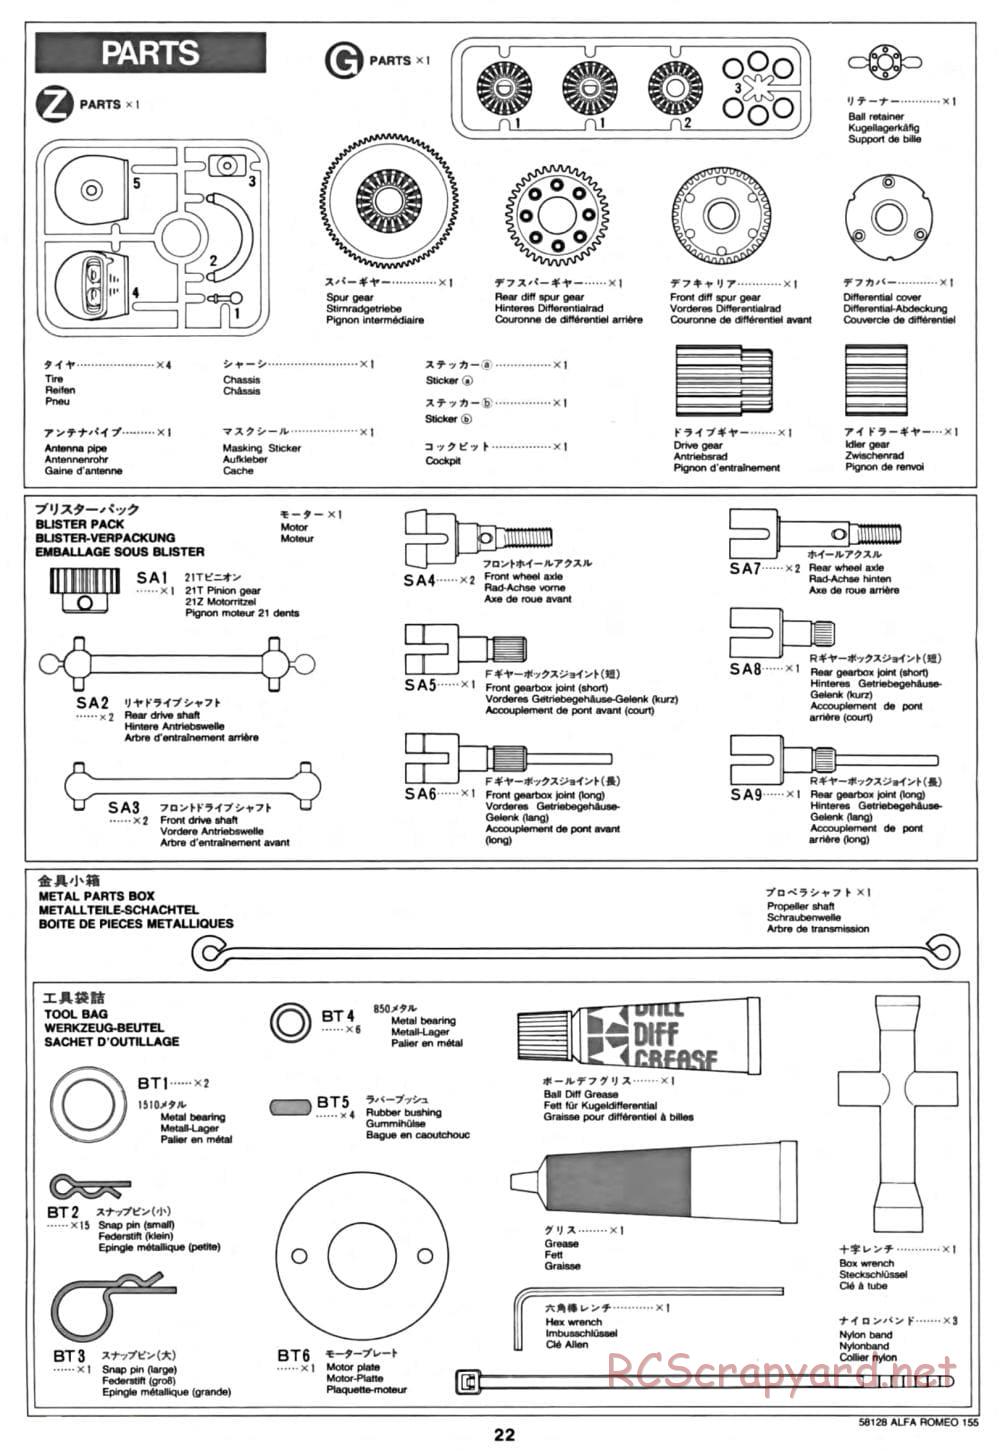 Tamiya - Alfa Romeo 155 V6 TI - TA-02 Chassis - Manual - Page 22